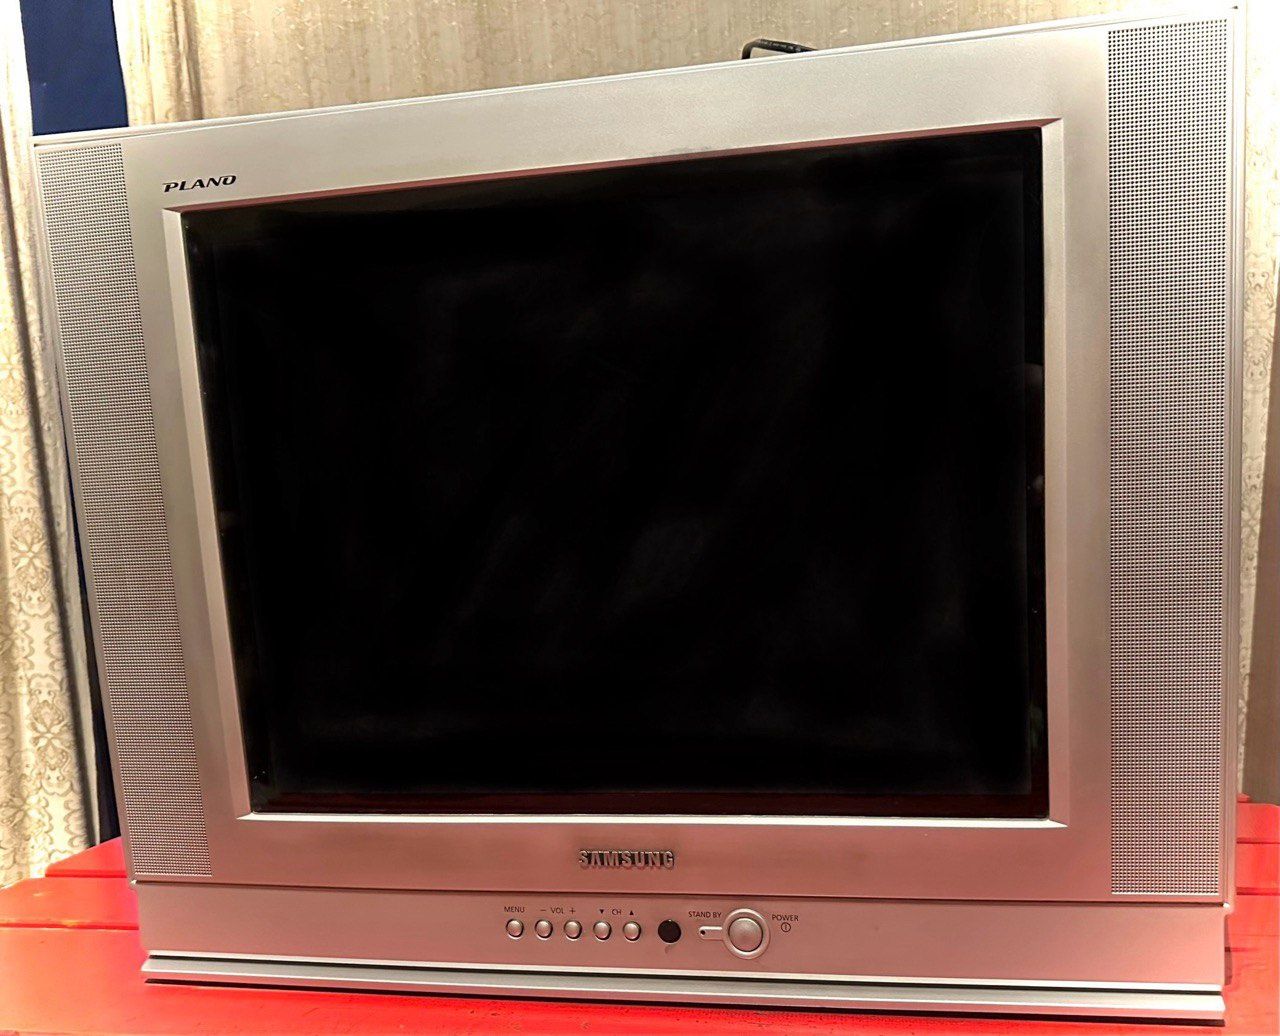 Продаётся телевизор Samsung Plano